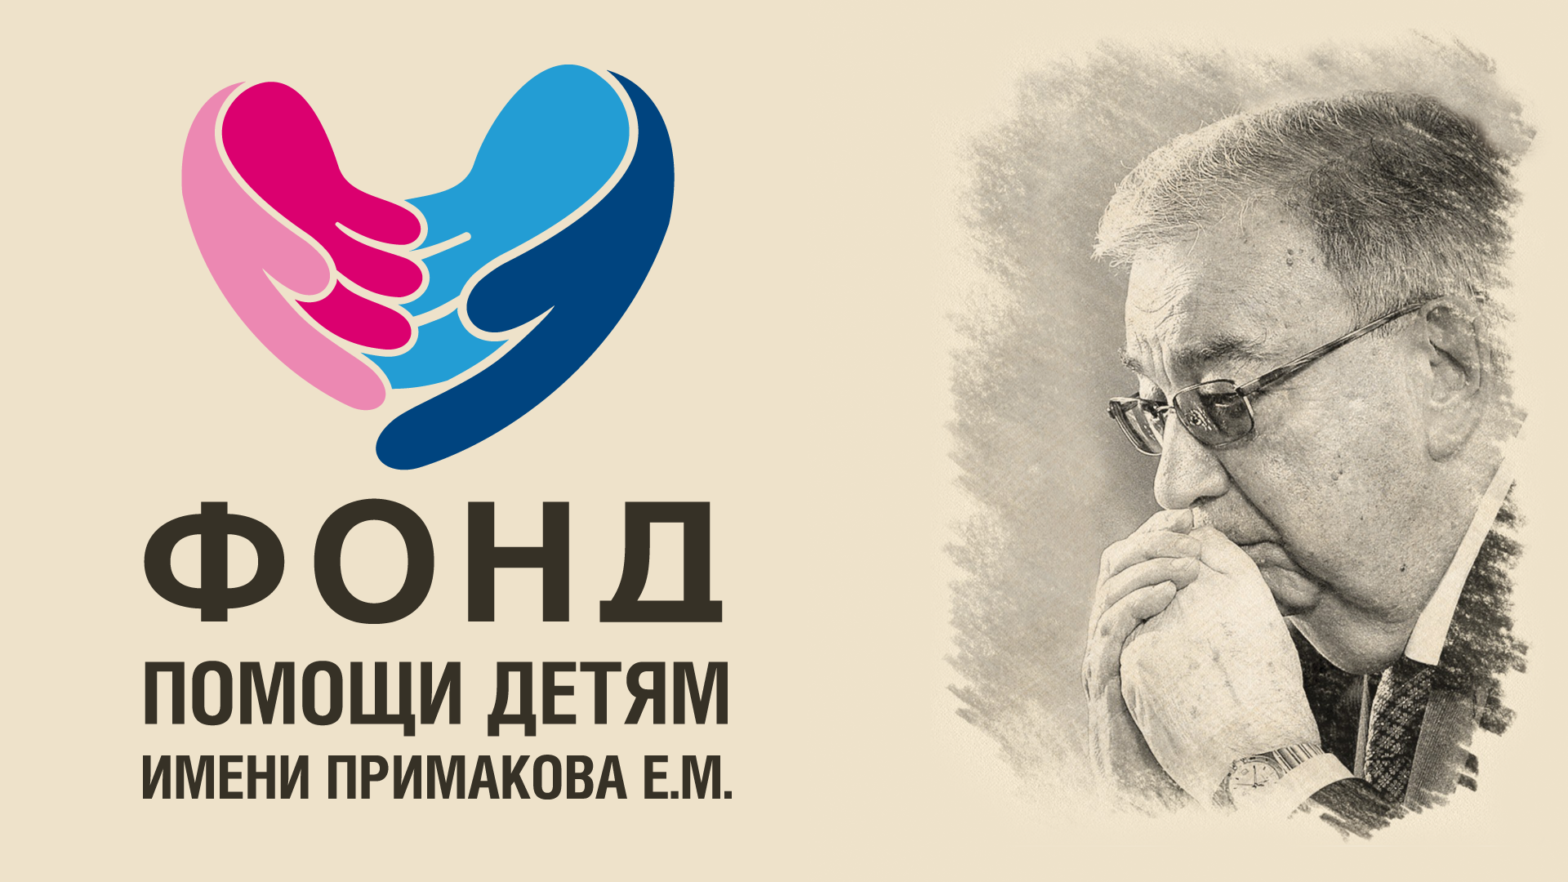 Благотворительный фонд собирает 155 млн рублей для спасения одного ребенка